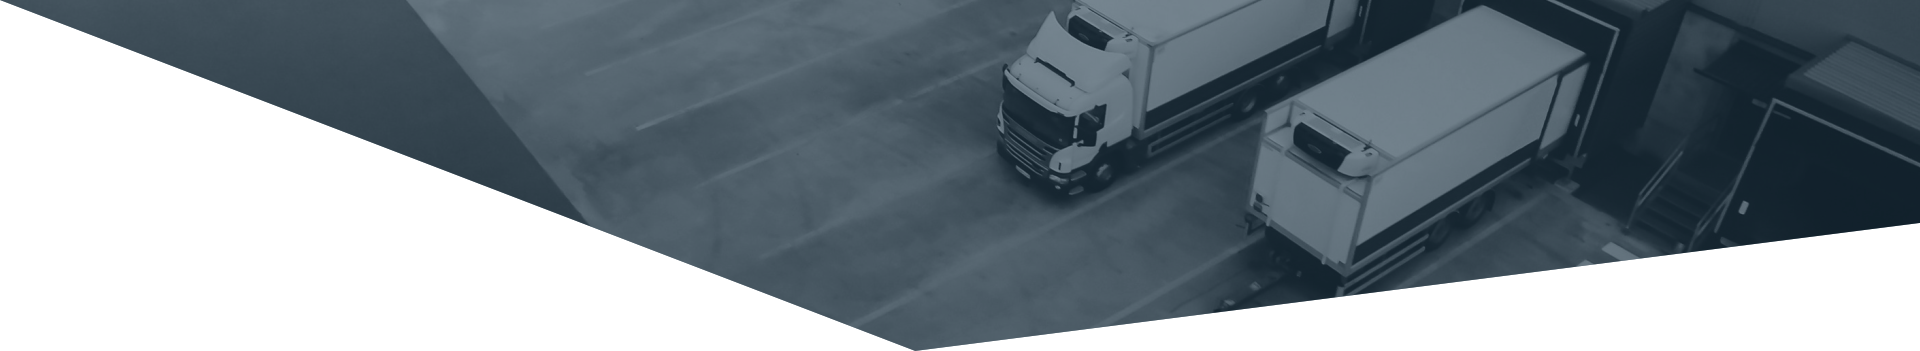 caminhões transporte terrestre nacional da 5C Logística e Transportes